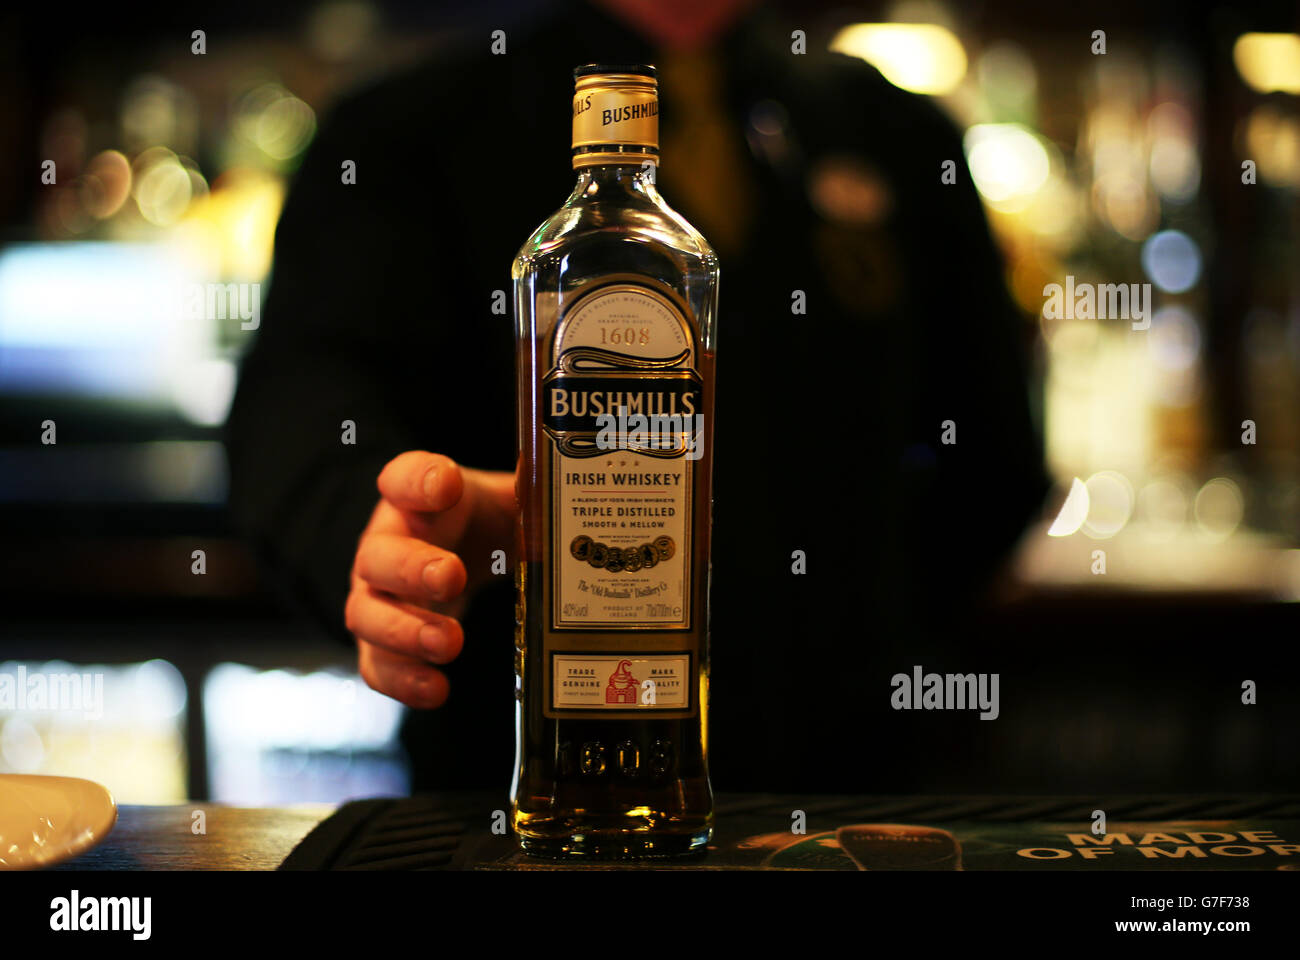 Une bouteille de Bushmills Irish Whiskey se trouve dans un bar du centre-ville de Dublin. Banque D'Images